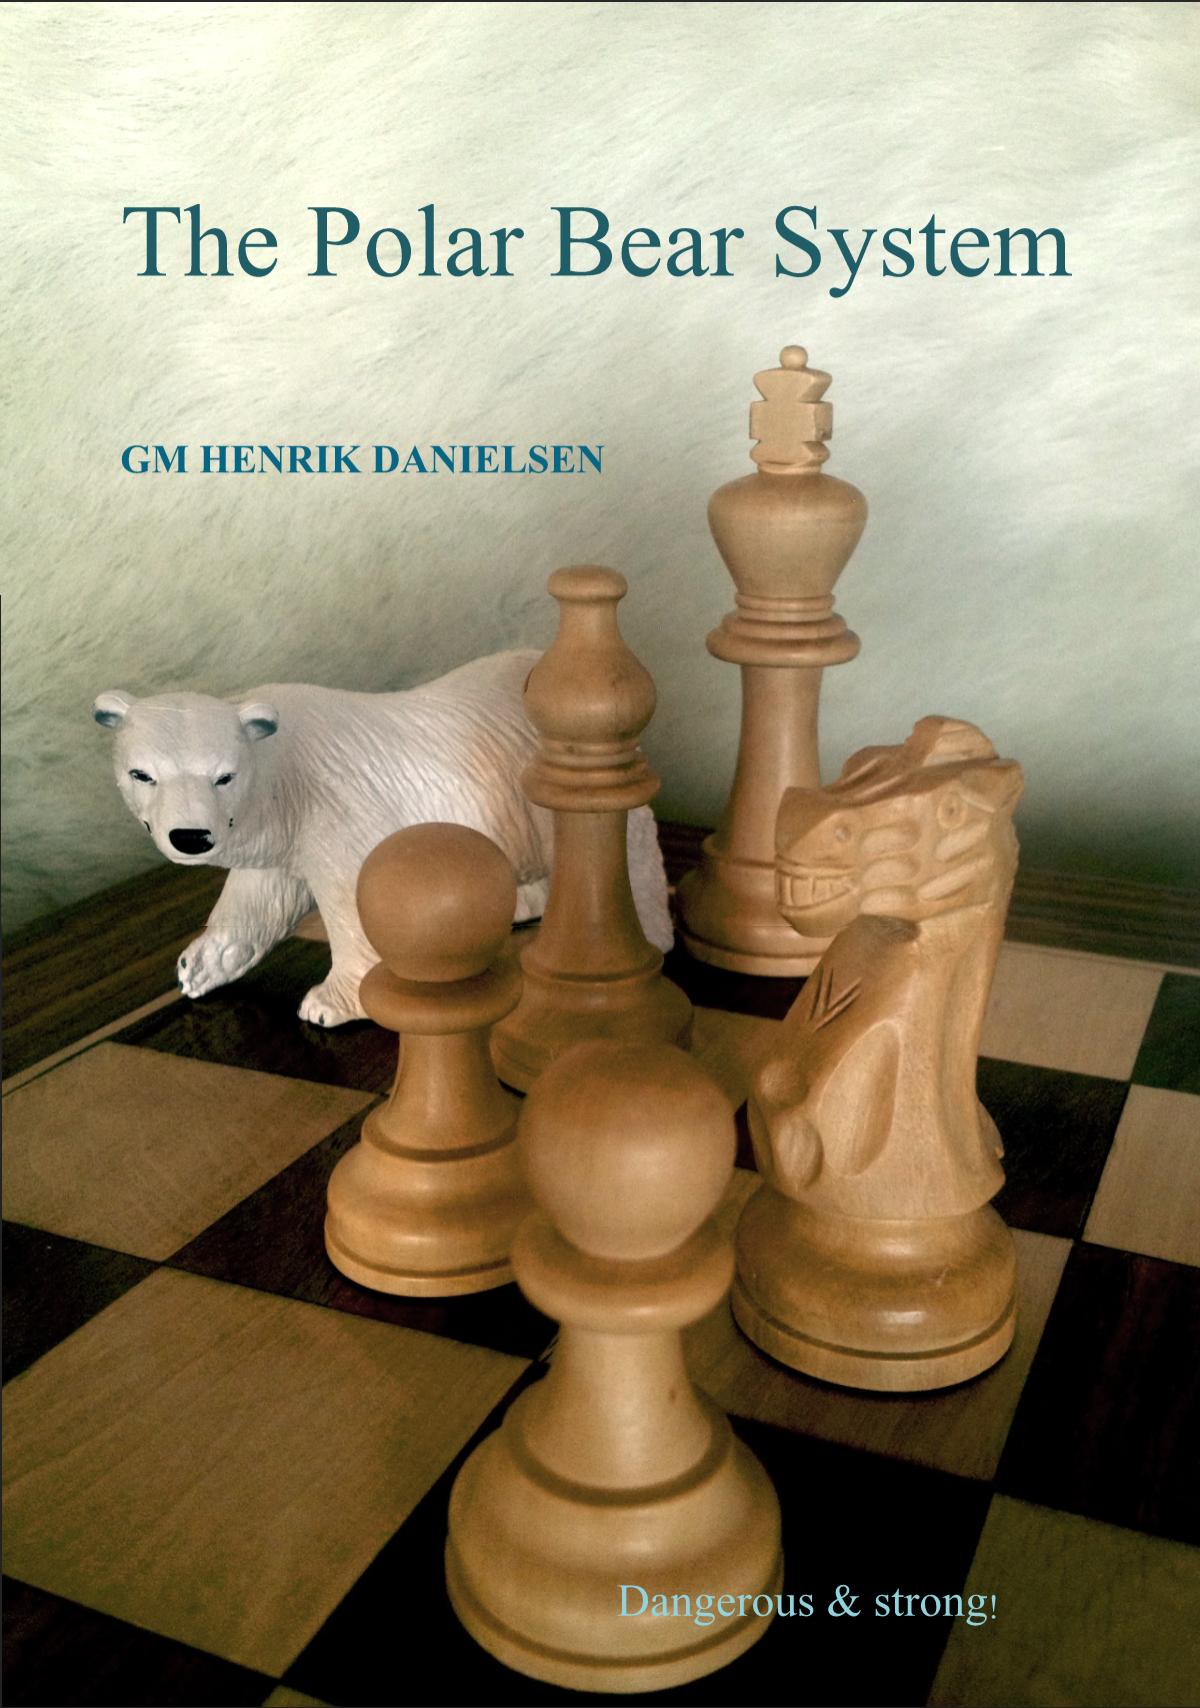 The Polar Bear System